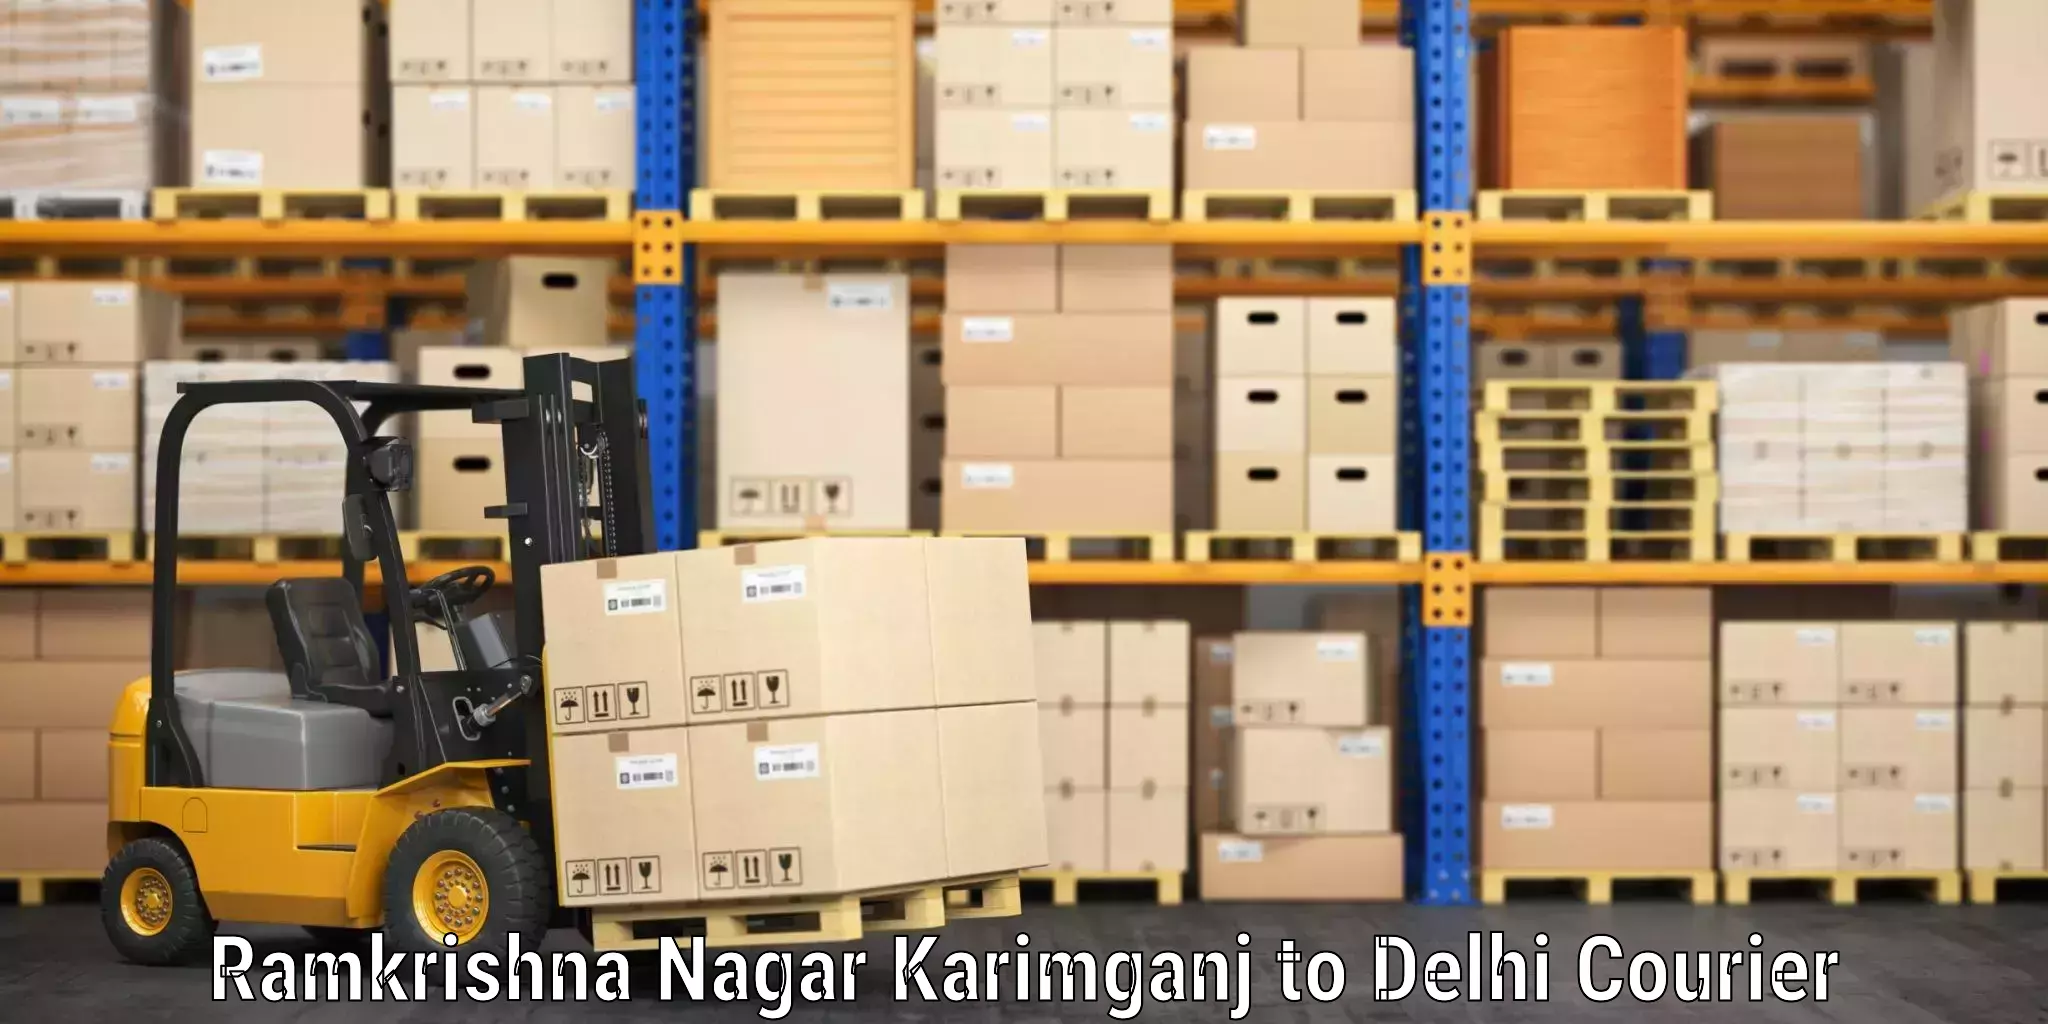 Baggage shipping advice in Ramkrishna Nagar Karimganj to University of Delhi